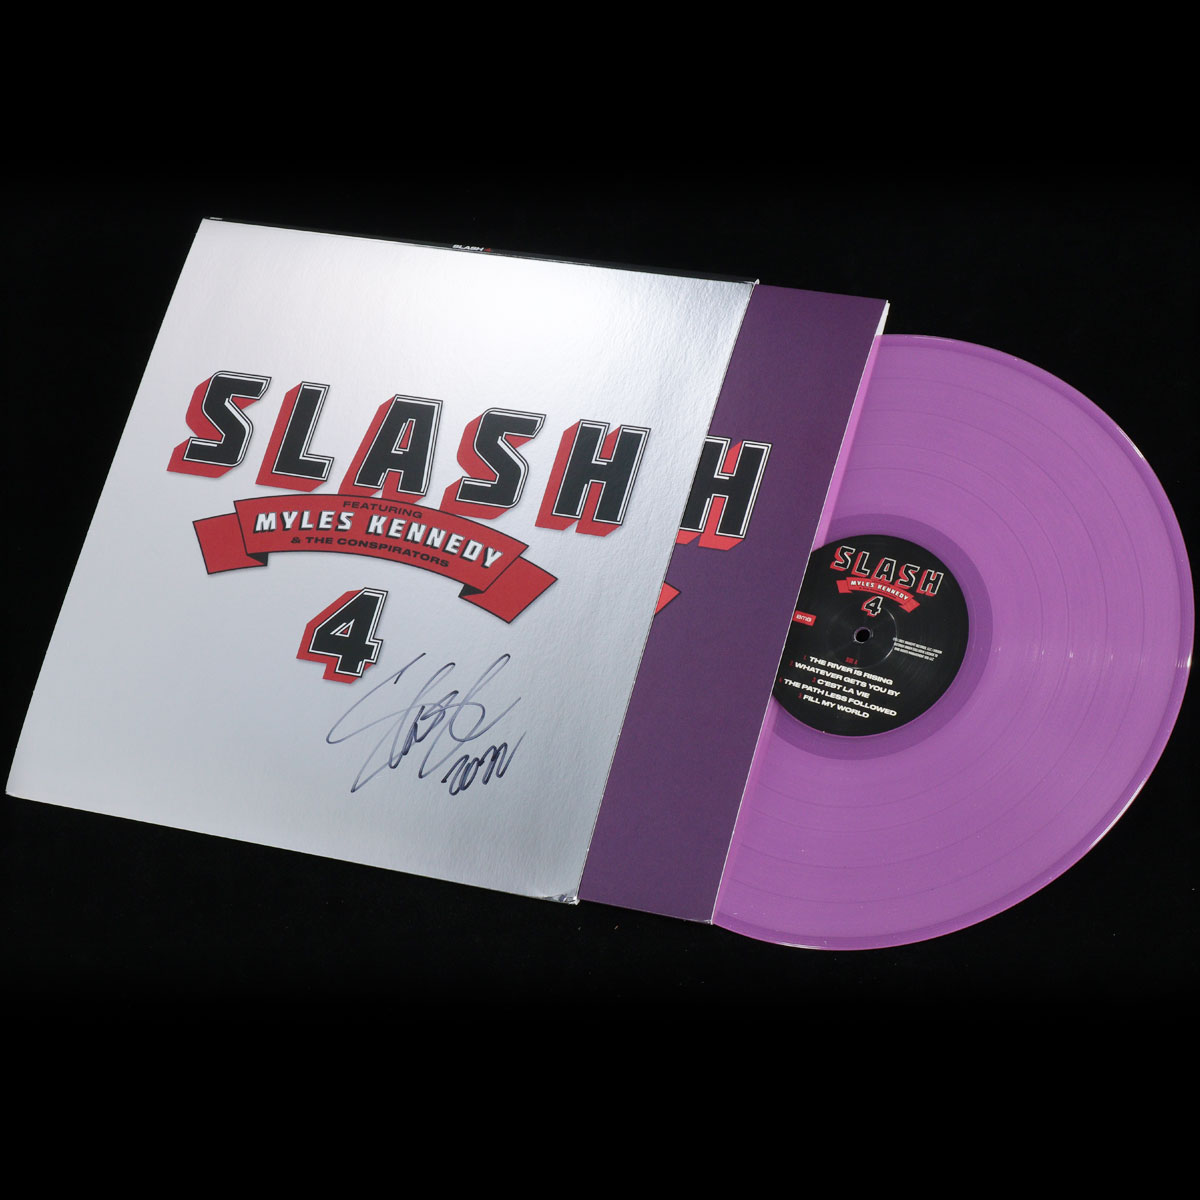 27,280円Guns n' Roses スラッシュ Slash 4 サインレコード